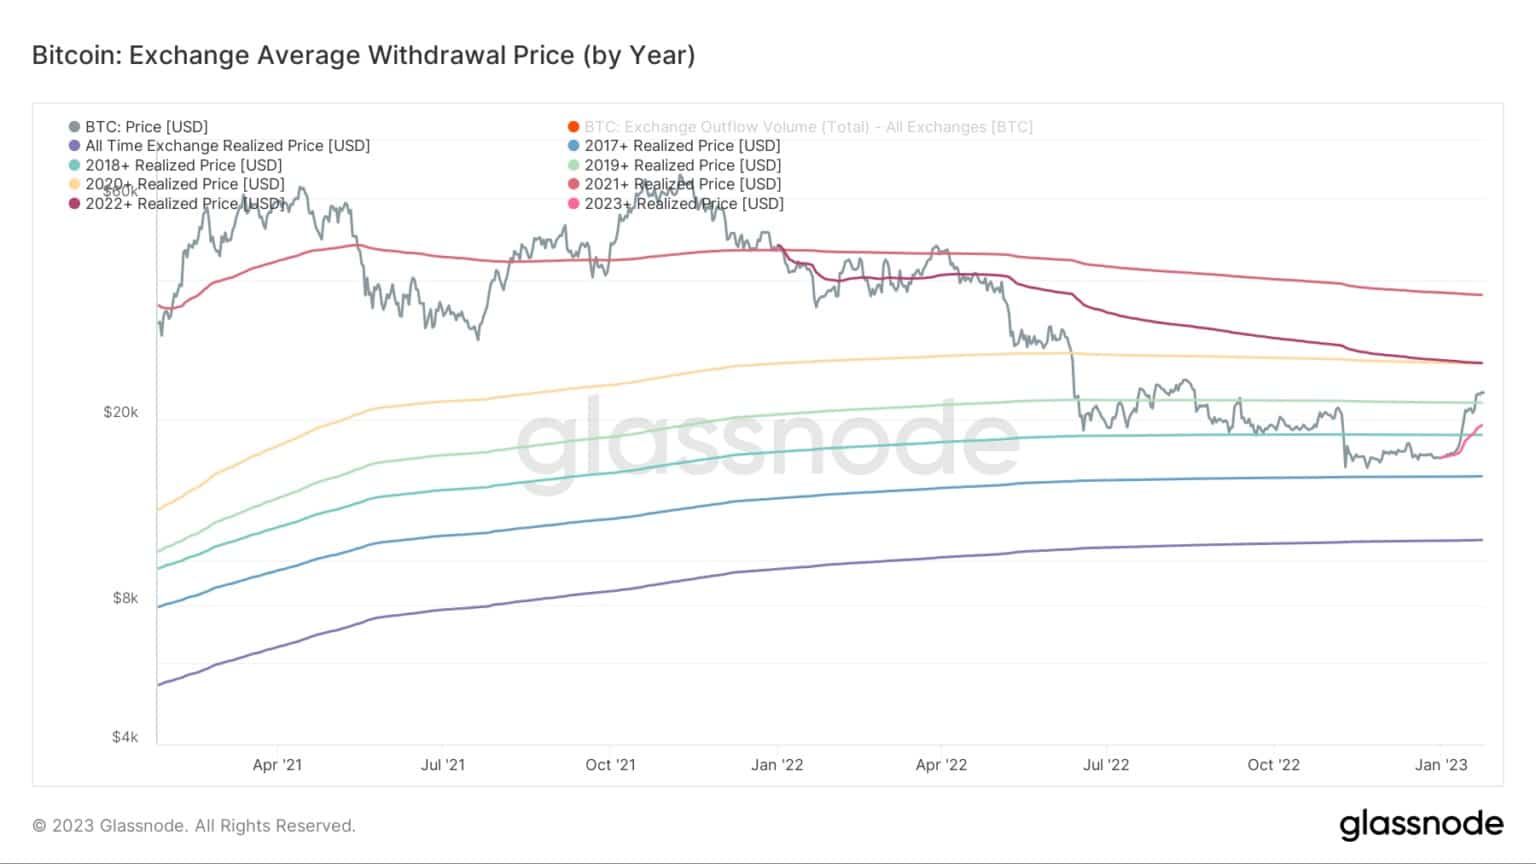 Grafik, die den durchschnittlichen Rücknahmepreis für Bitcoin nach Jahr zeigt (Quelle: Glassnode)